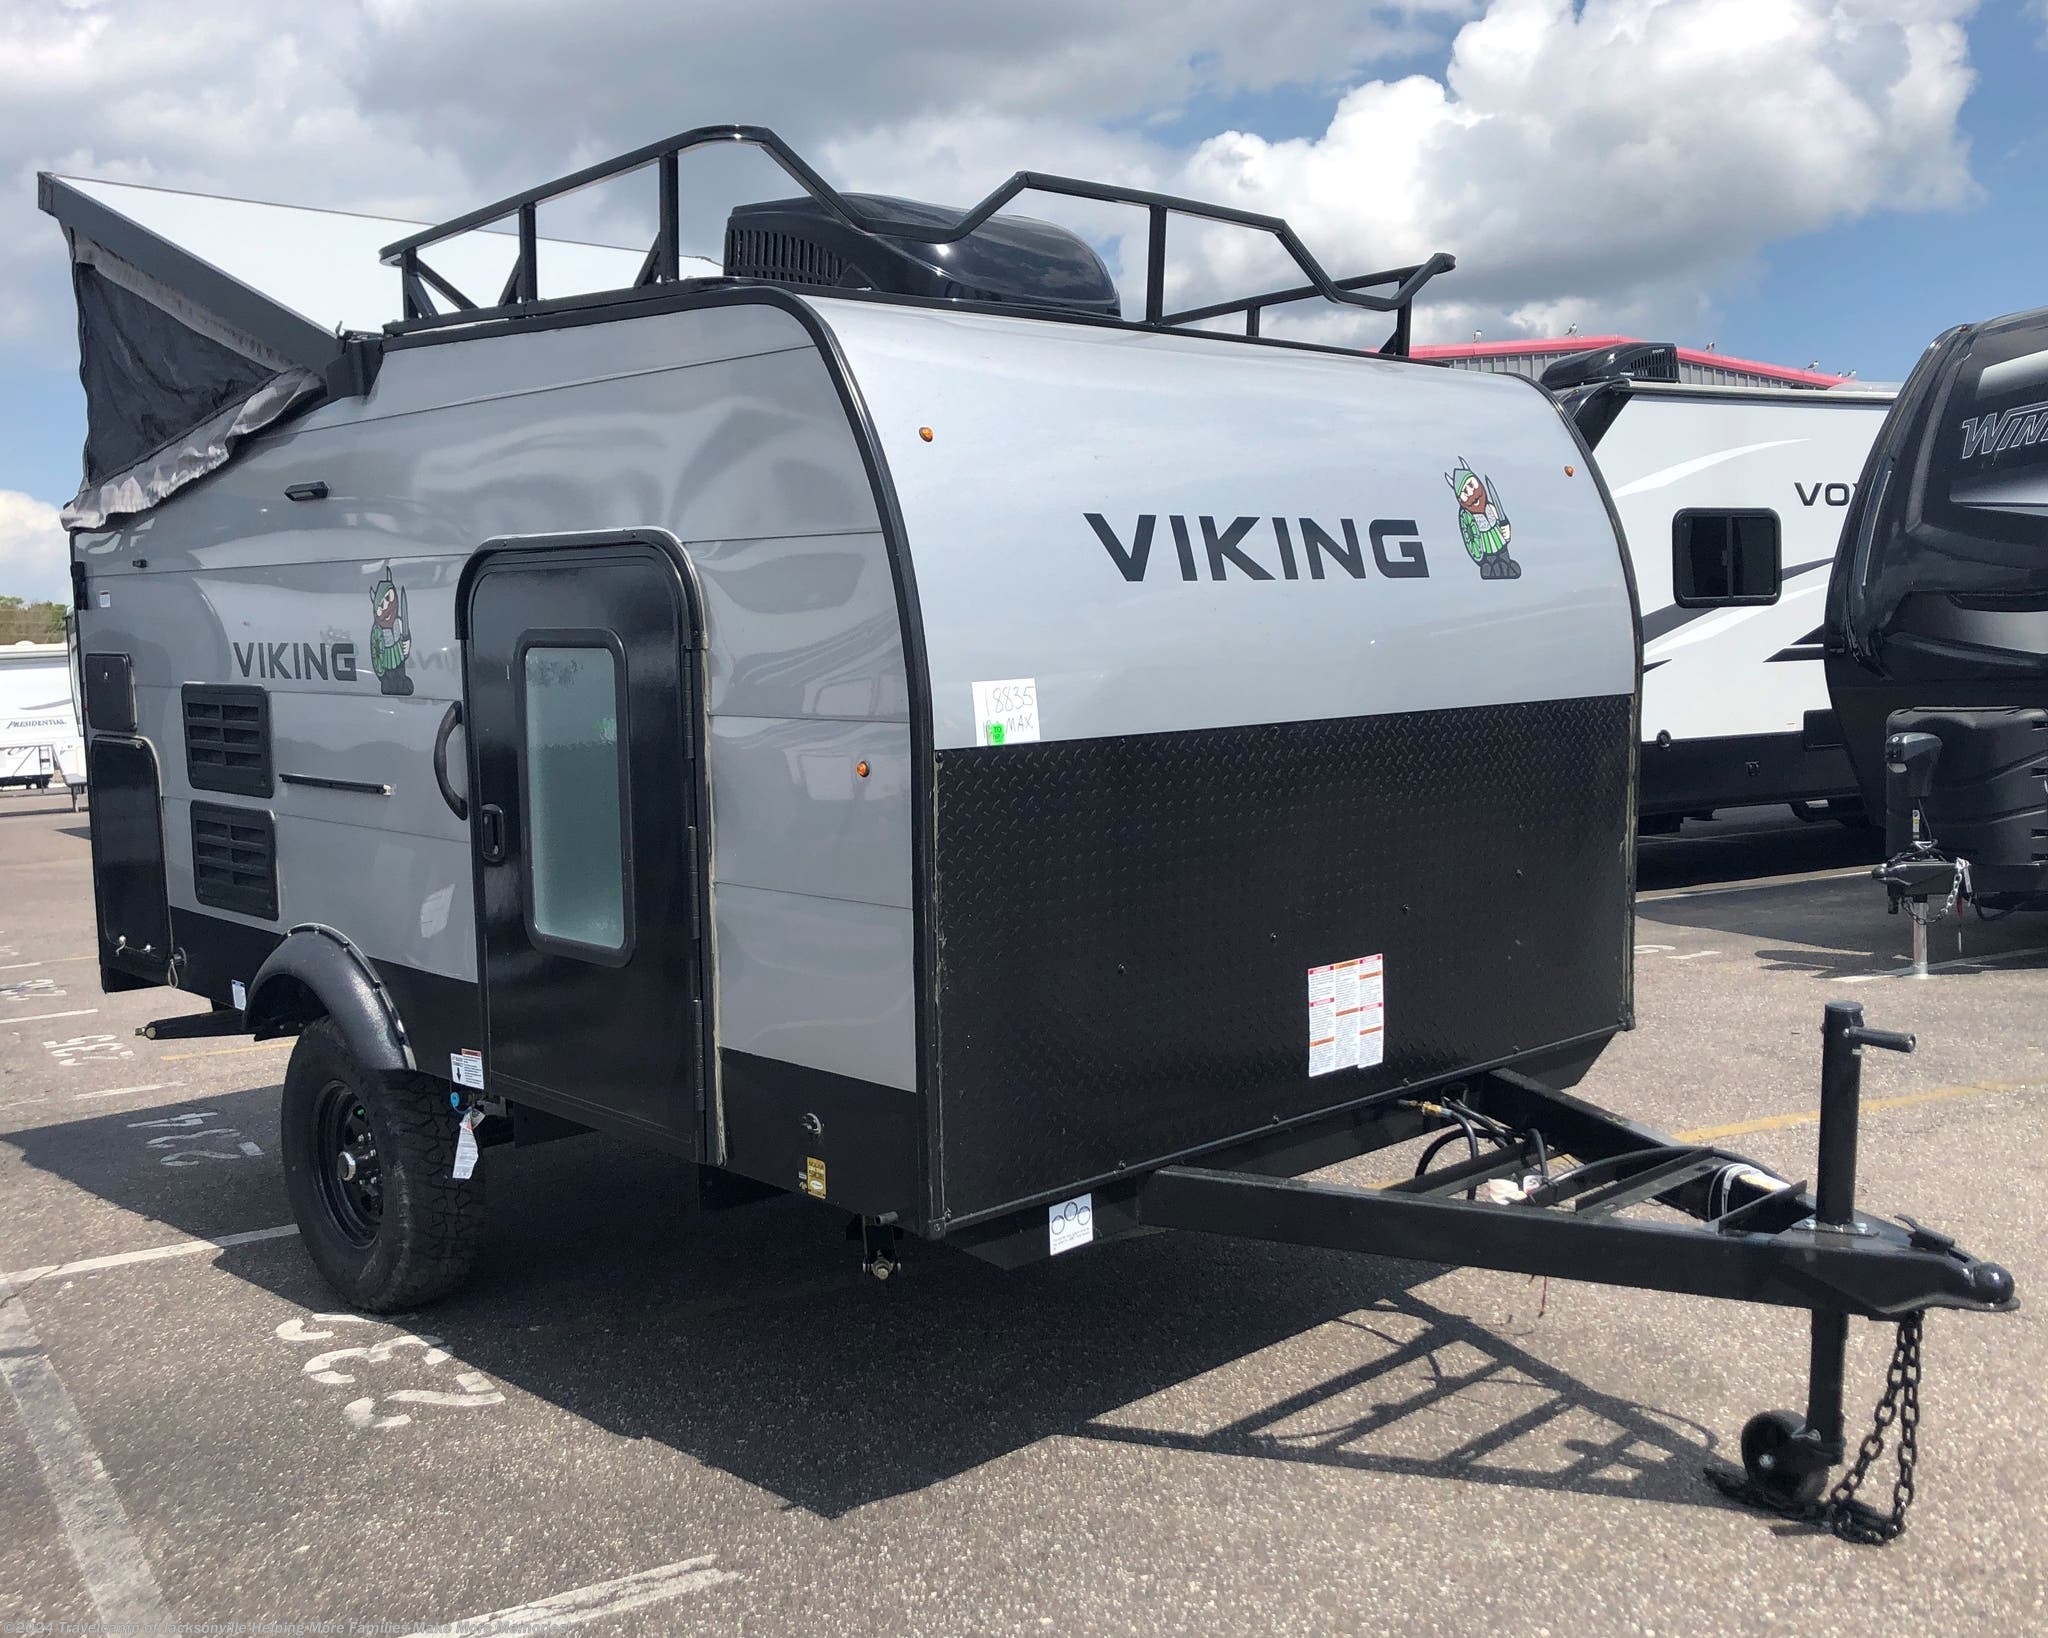 2021 Coachmen Viking 12.0 TD MAX RV for Sale in Jacksonville, FL 32216